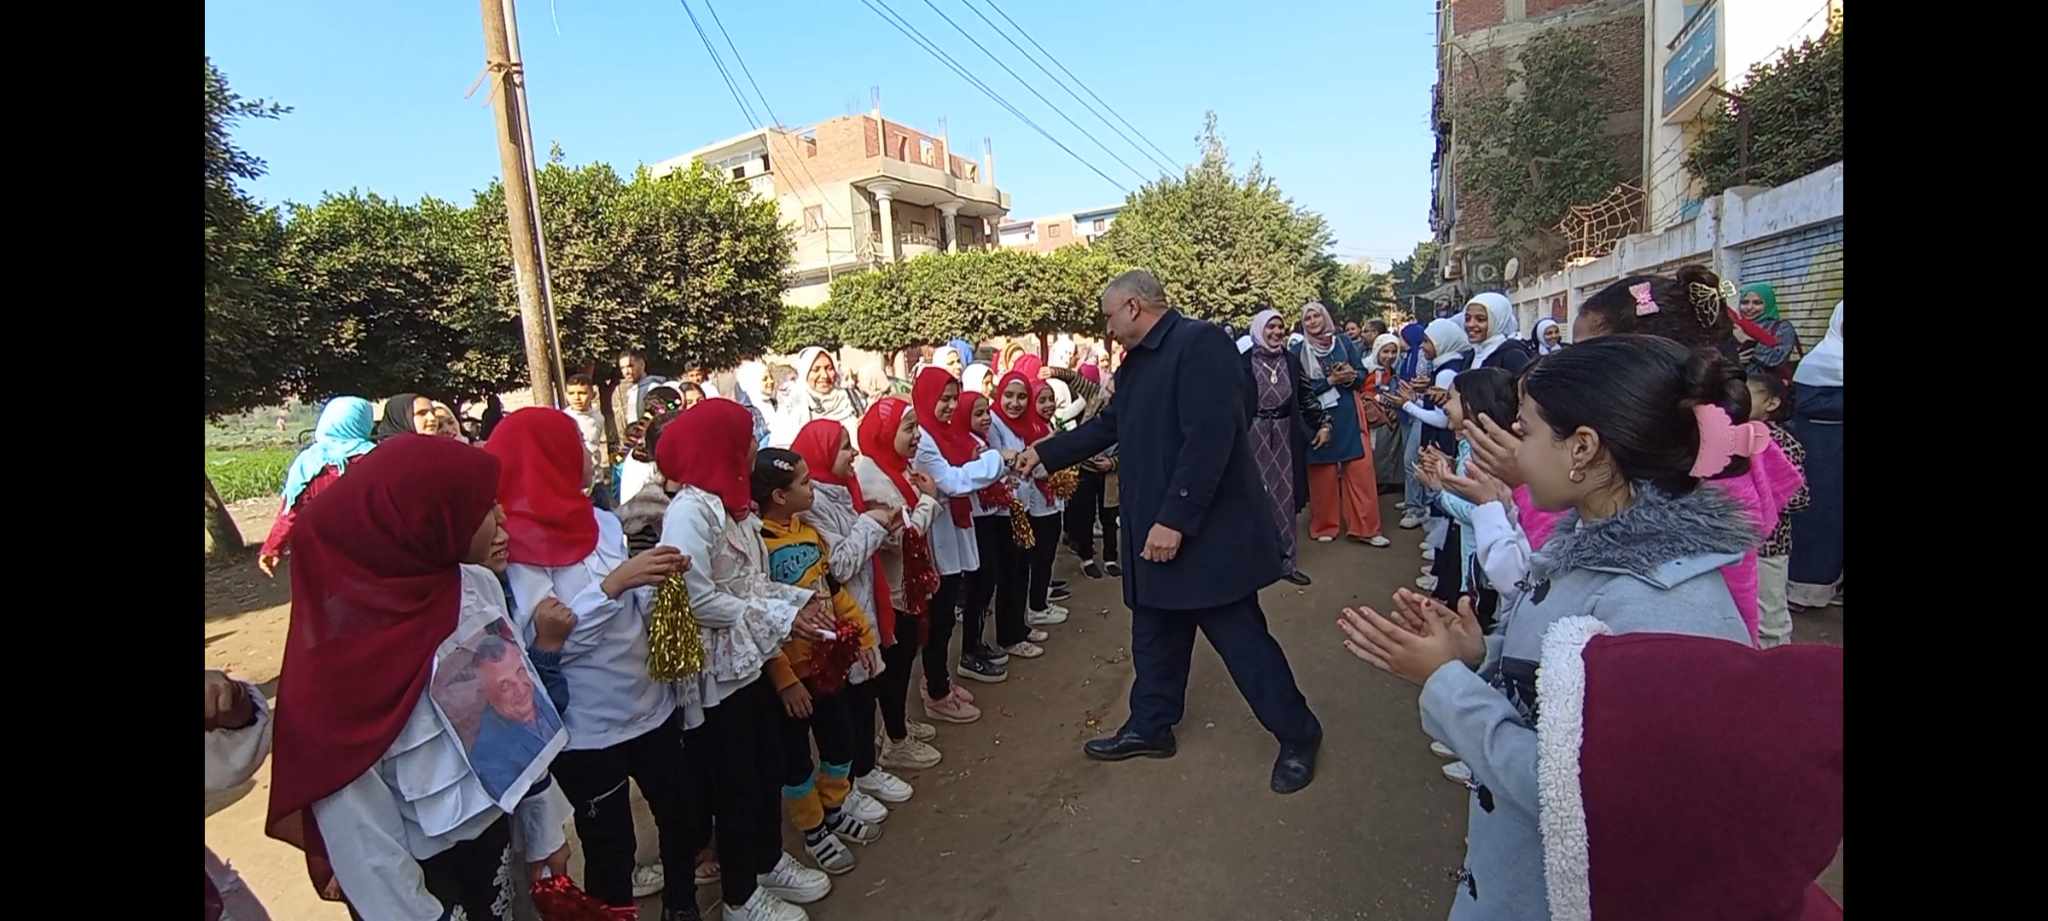 قرية سنهرة بطوخ  تتزين بممر شرفي لتكريم عميد مديري المدارس طارق البيجاوي